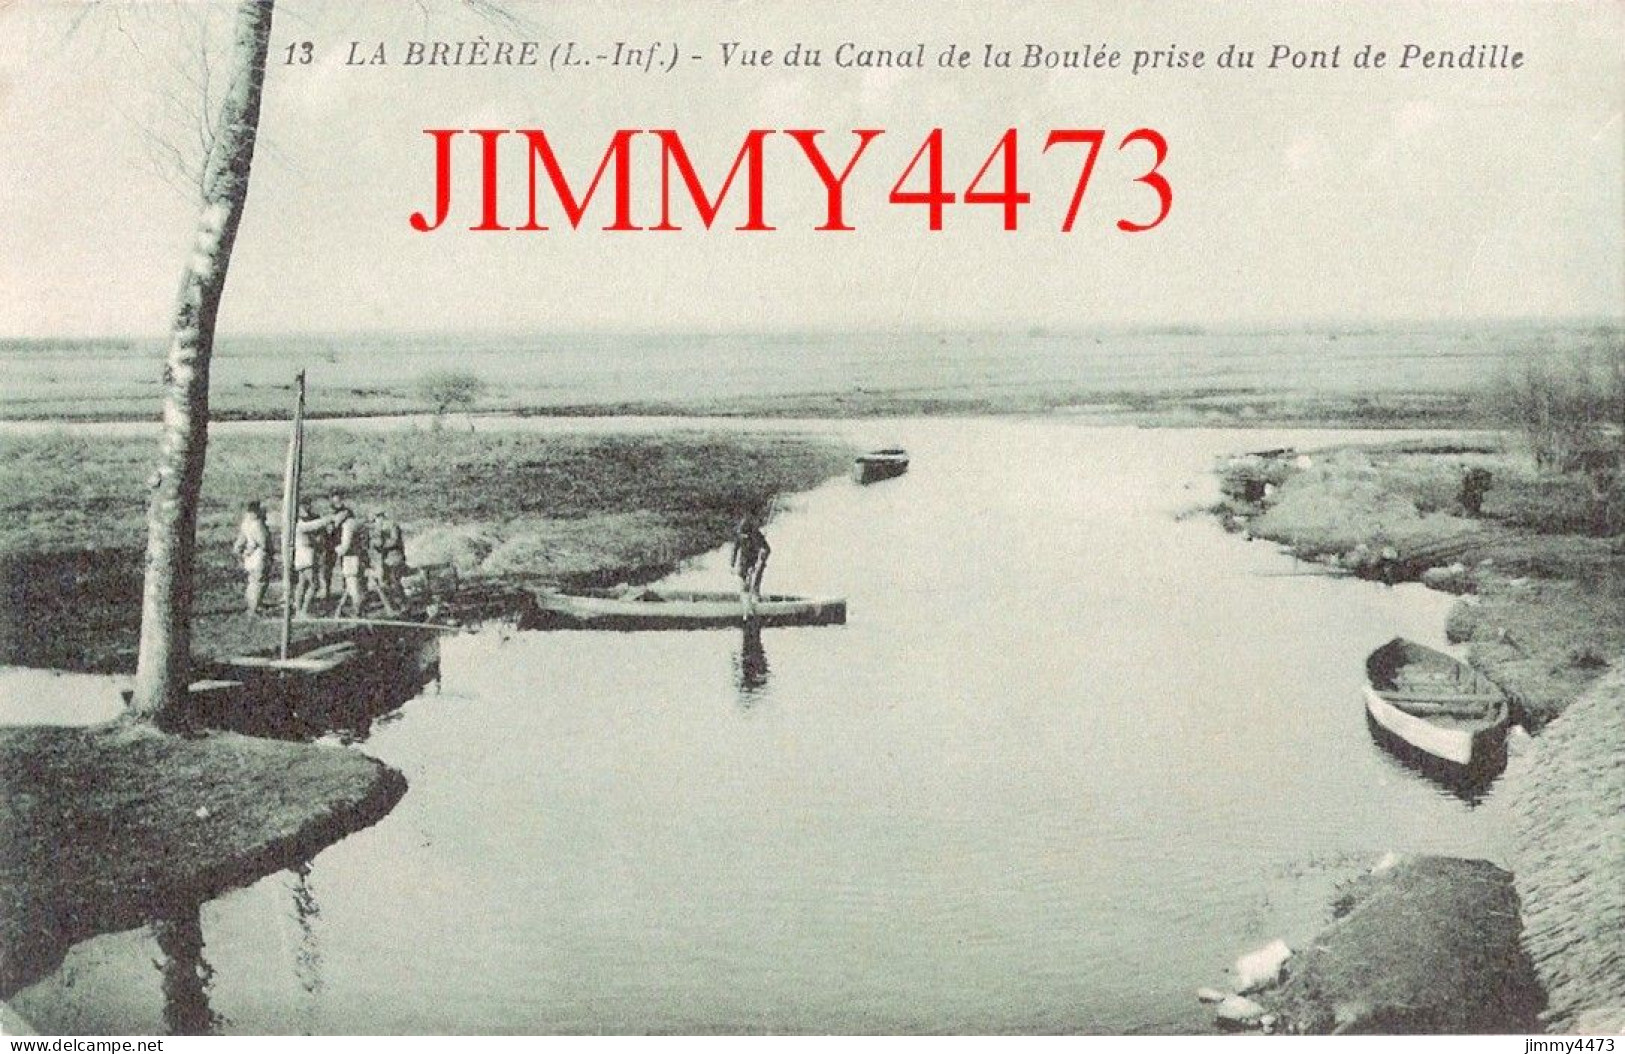 CPA - LA BRIERE ( Saint-Joachim L.-Inf.) Vue Du Canal De La Boulée Prise Du Pont De Pendille - N°13  Edit J. Nozais - Saint-Joachim